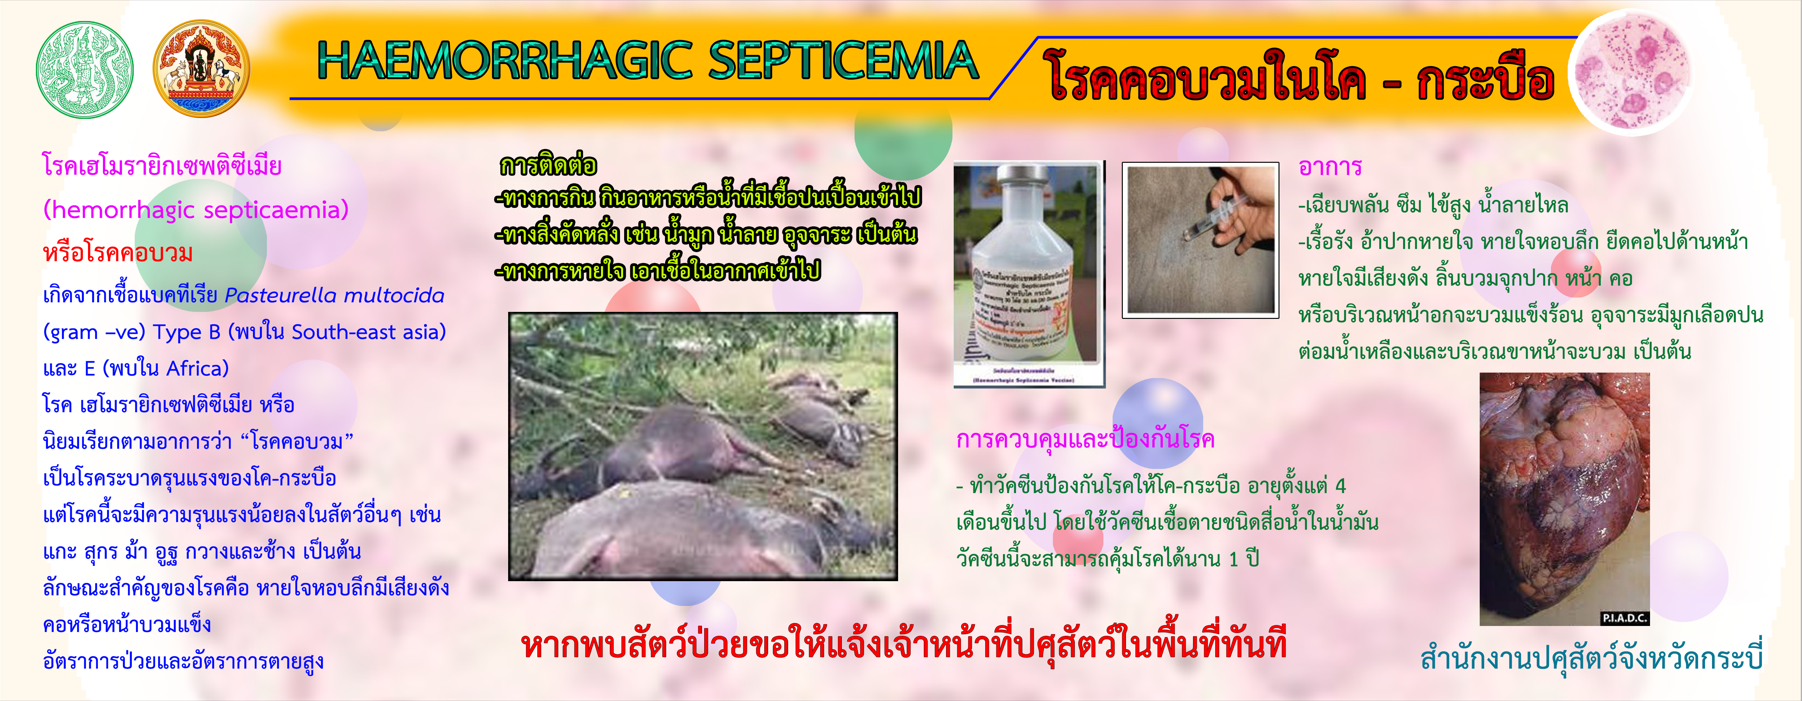 haemorrhagic septicemia 2